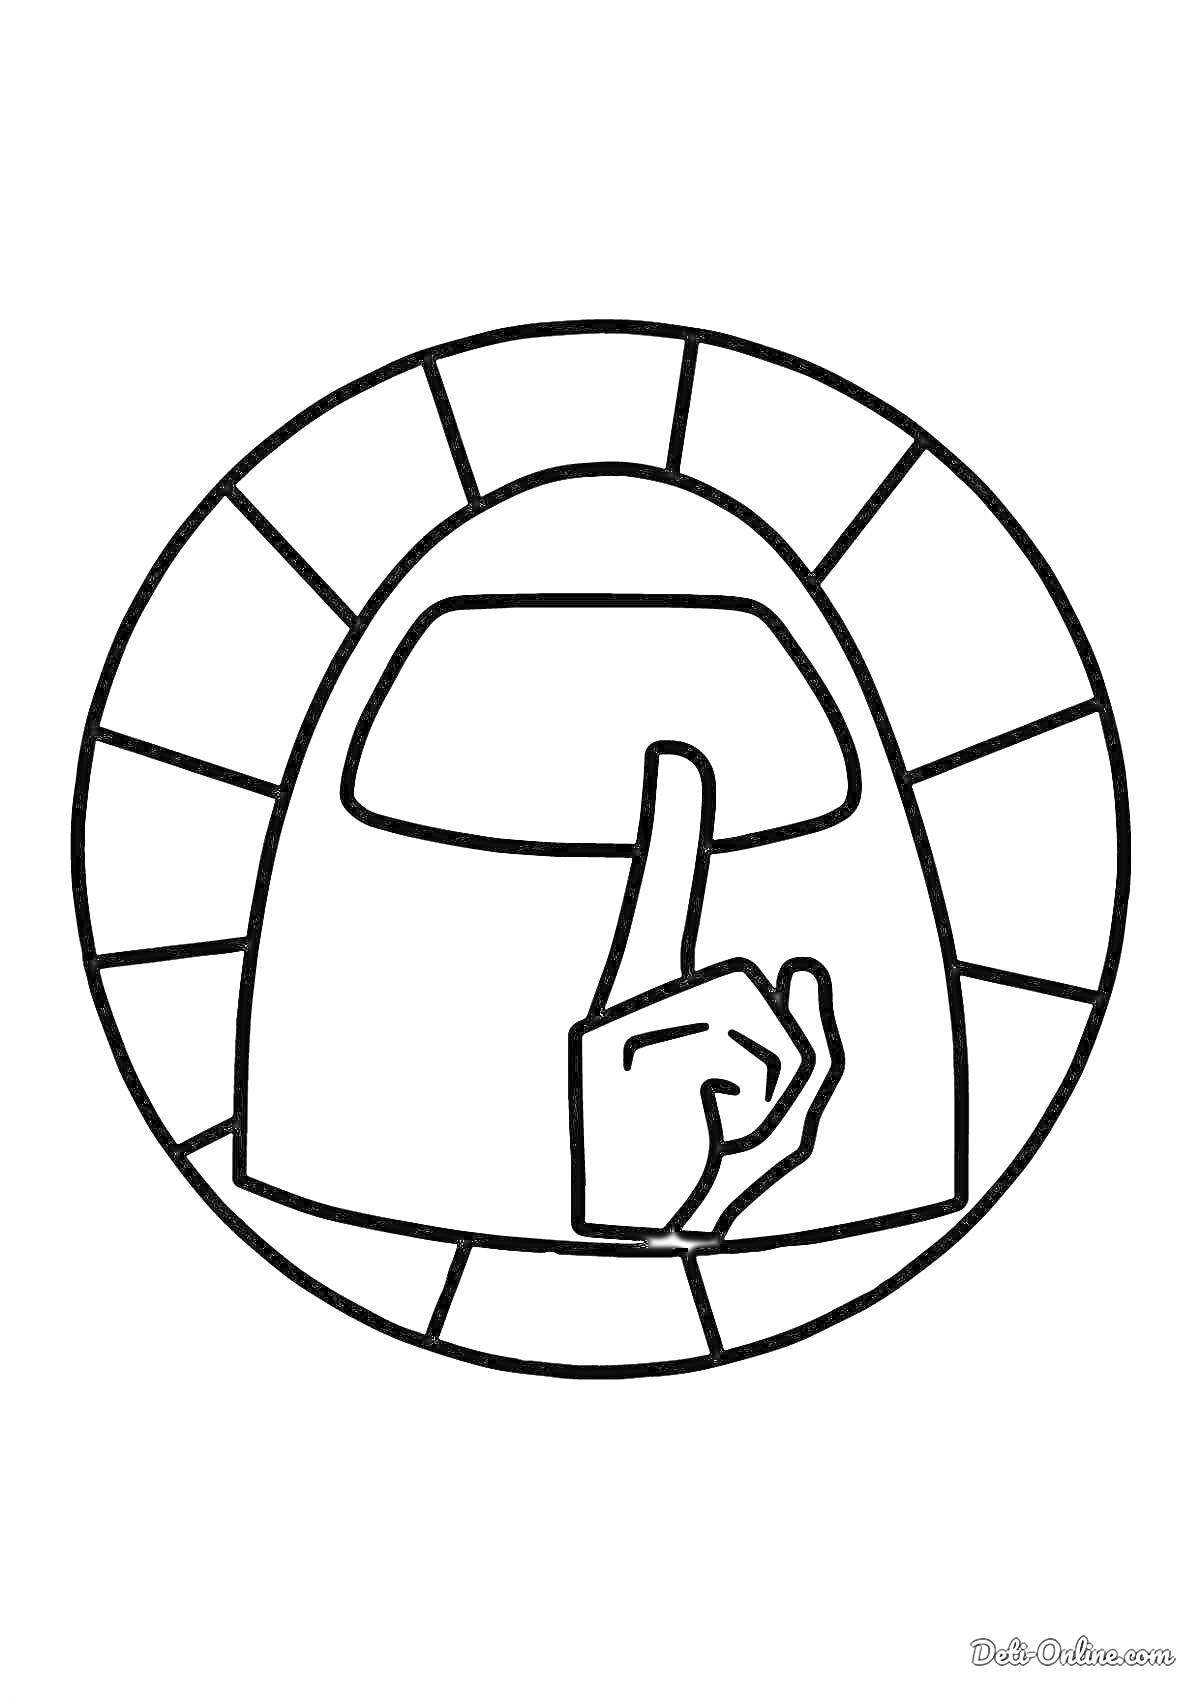 Амонгас - персонаж с поднятым вверх указательным пальцем в круглом обрамлении